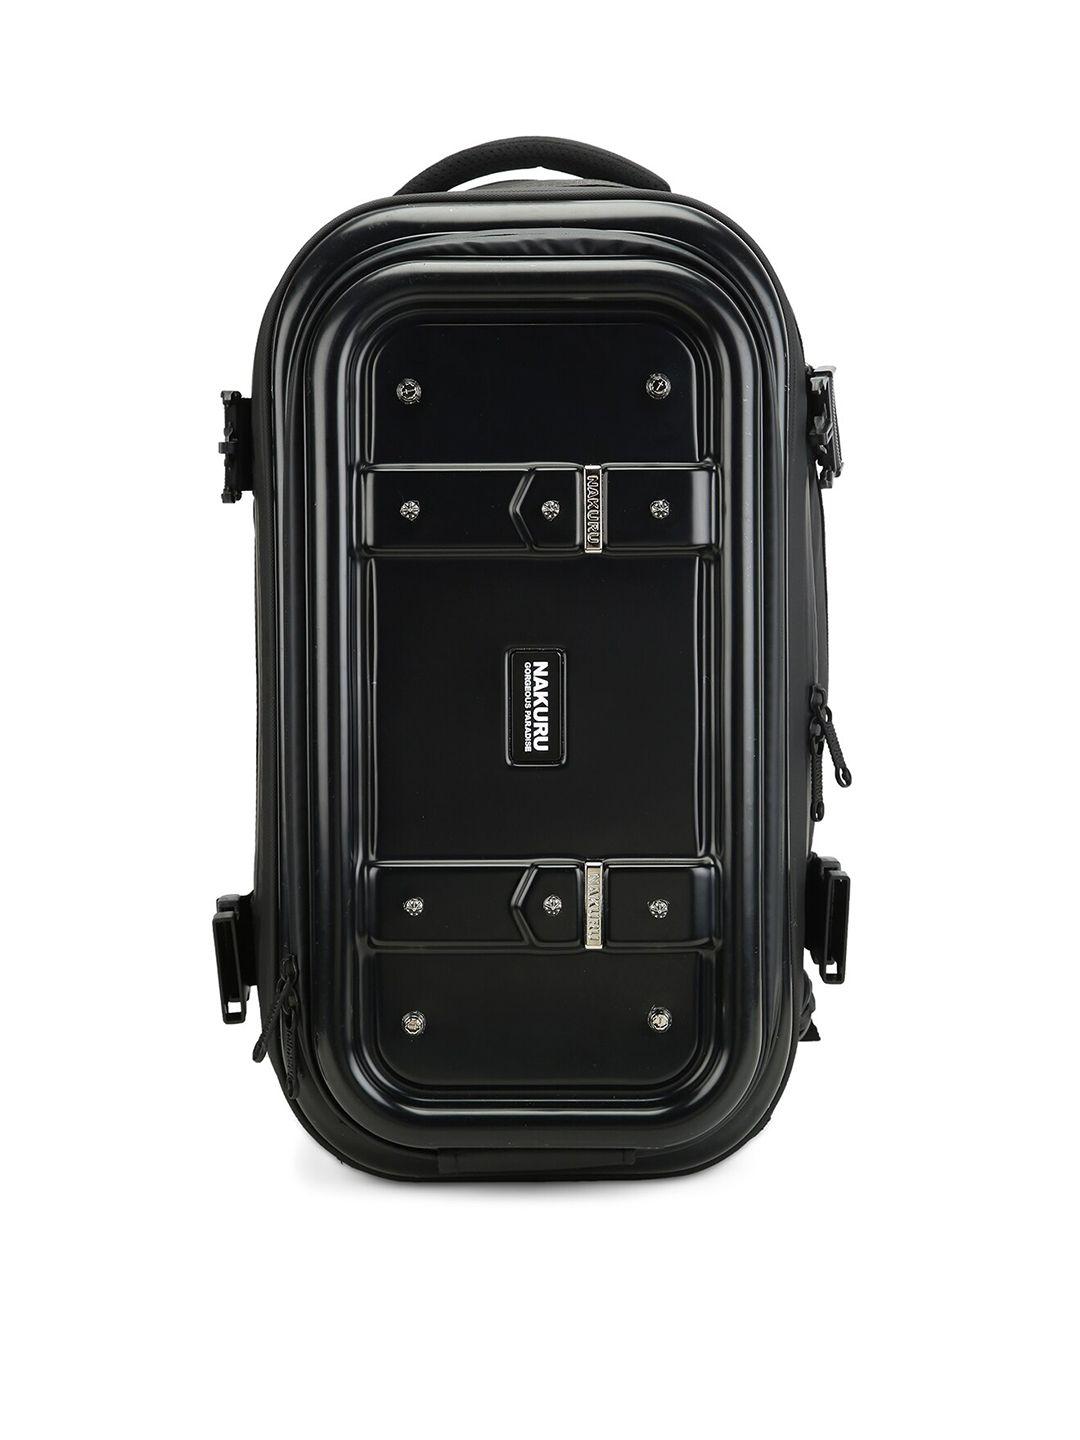 nakuru unisex black solid range shiny color soft case backpack